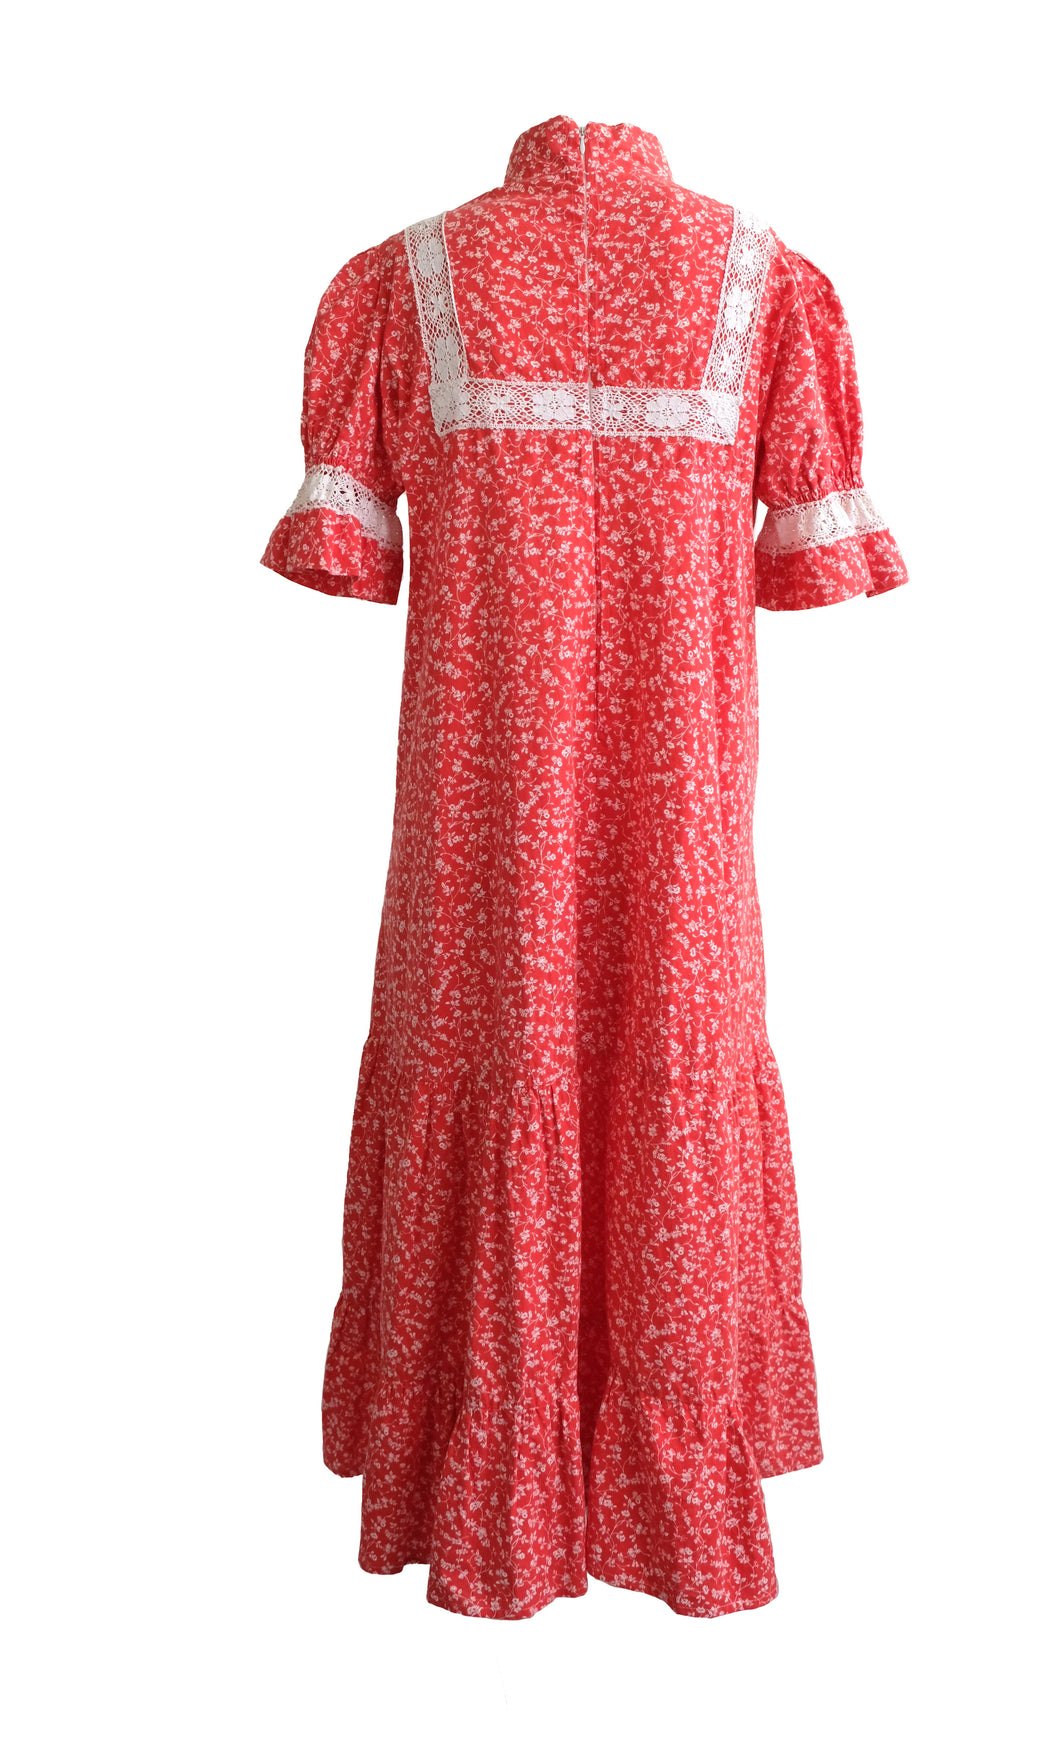 Laura Ashley Vintage Prairie Dress in Red Floral Print, UK10-12